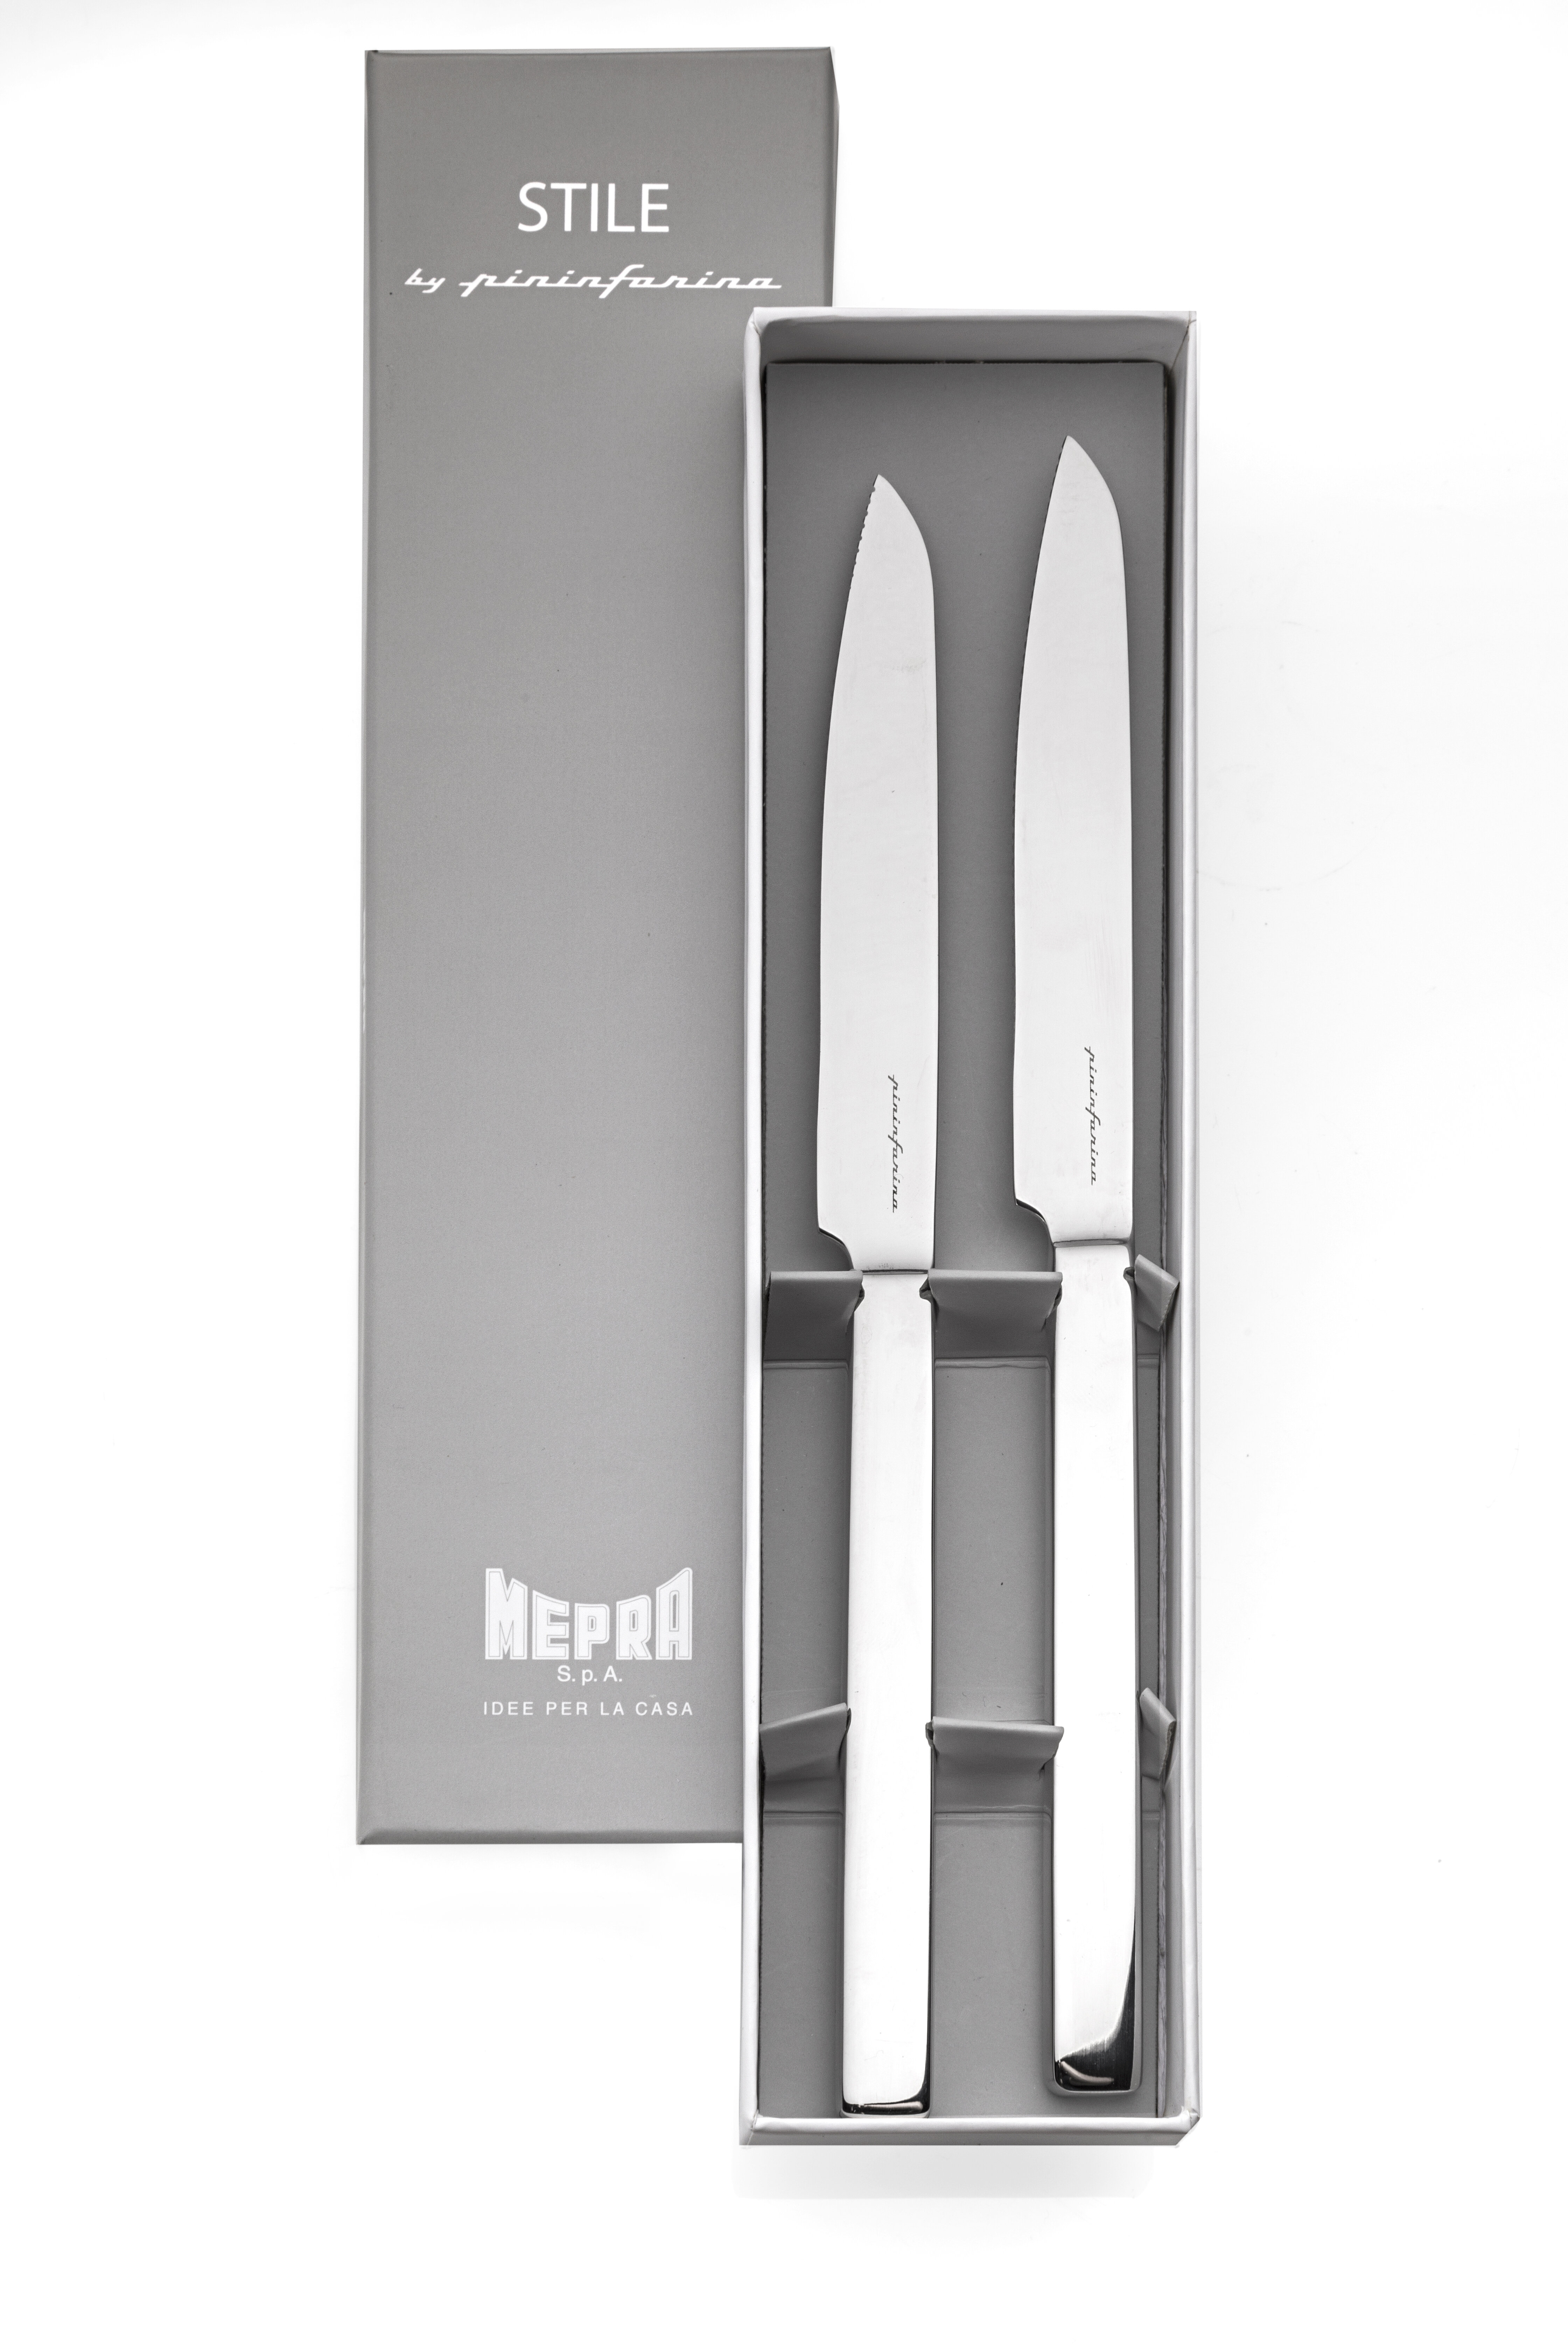 https://assets.wfcdn.com/im/74102540/compr-r85/6878/68780601/mepra-gift-box-2-pcs-steak-knives-stainless-steel.jpg